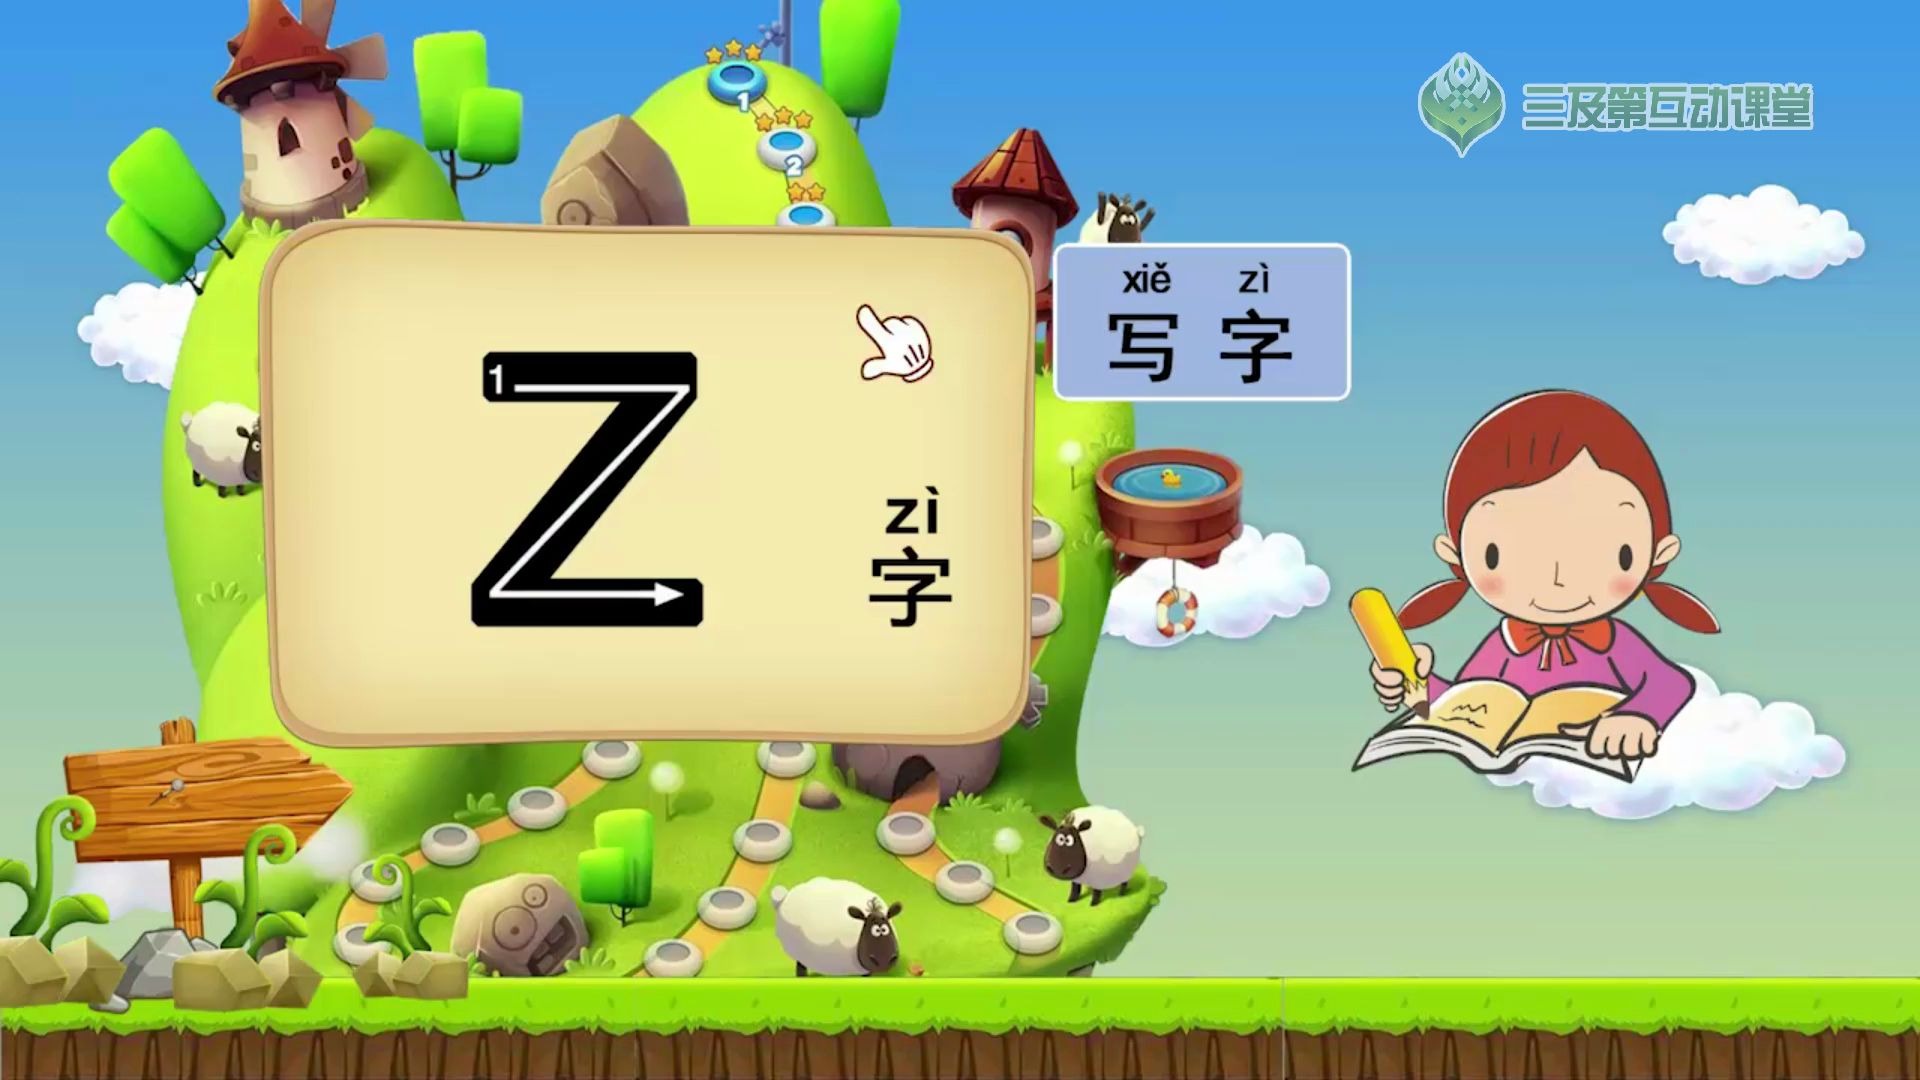 【学前必备】拼音字母表之声母z,让小孩看动画学拼音